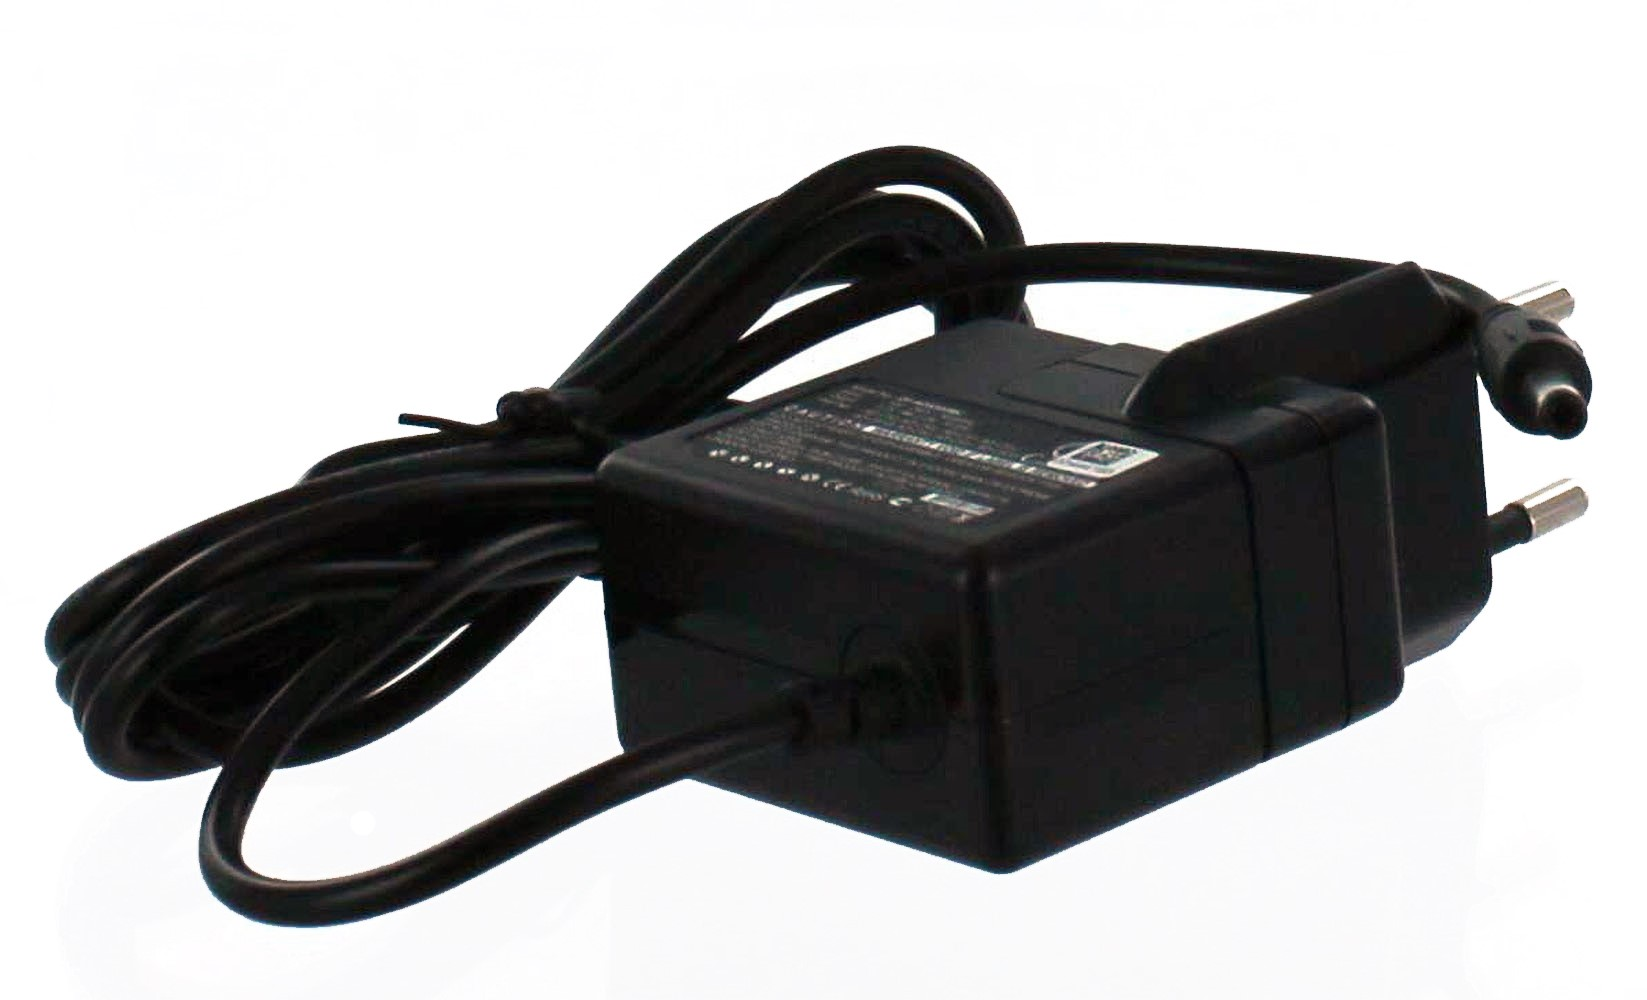 MOBILOTEC Netzteil Casio, kompatibel EX-Z850 Volt, 5.3 Netzteil/Ladegerät mit Exilim Casio schwarz